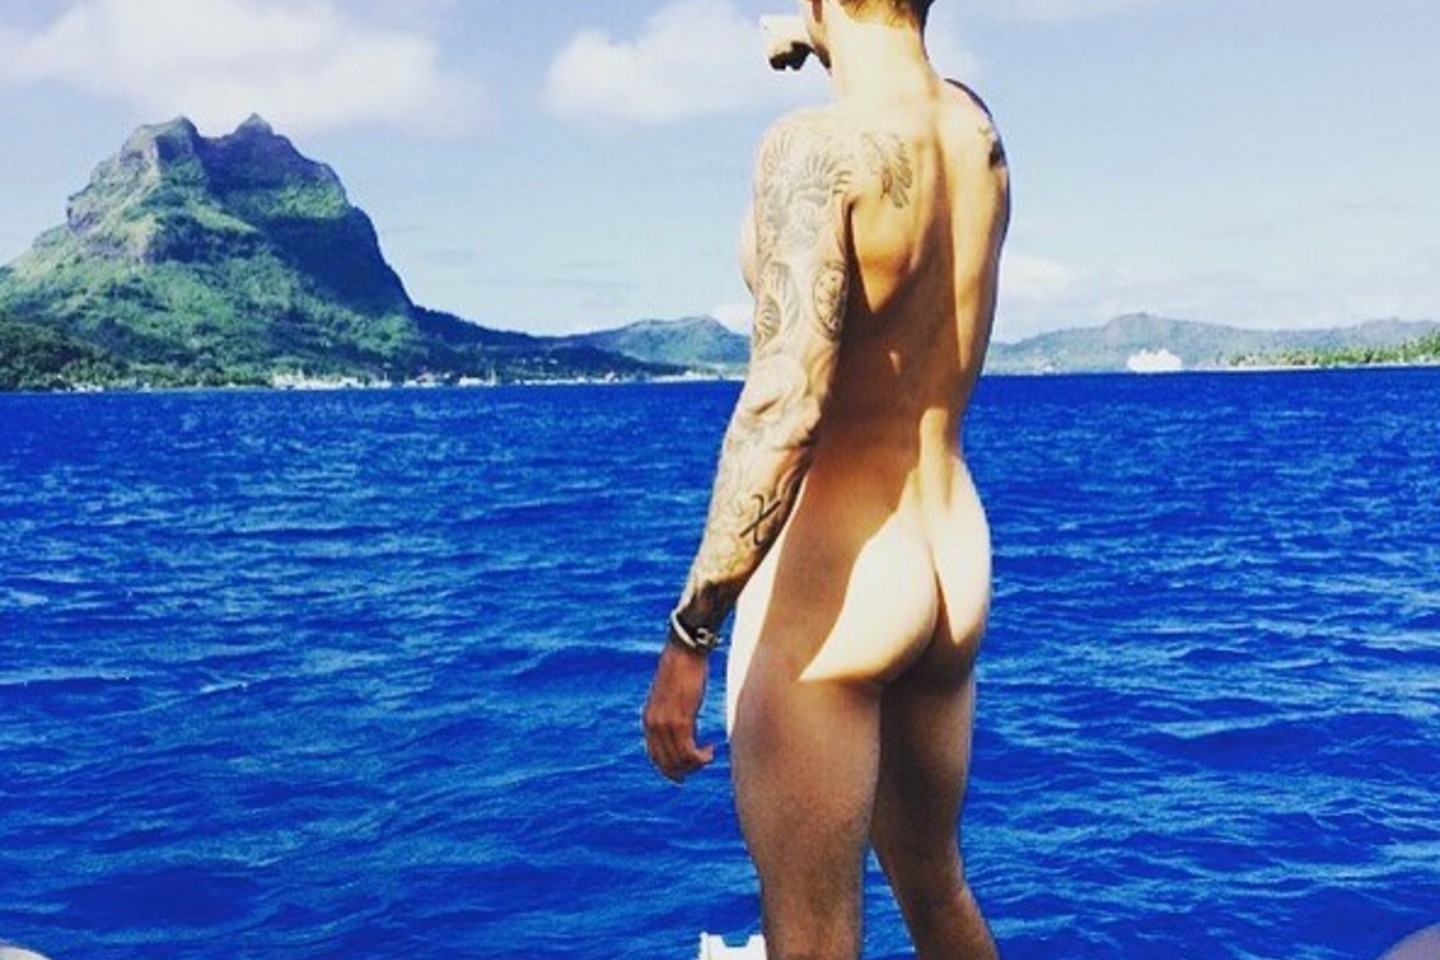 Skandalingai pagarsėjęs kanadiečių dainininkas Justinas Bieberis (21 m.) savo „Instagram“ paskyroje paviešino išties pikantišką nuotrauką, kurioje visu gražumu puikuojasi jo užpakalis.<br>„Instagram“ nuotr.